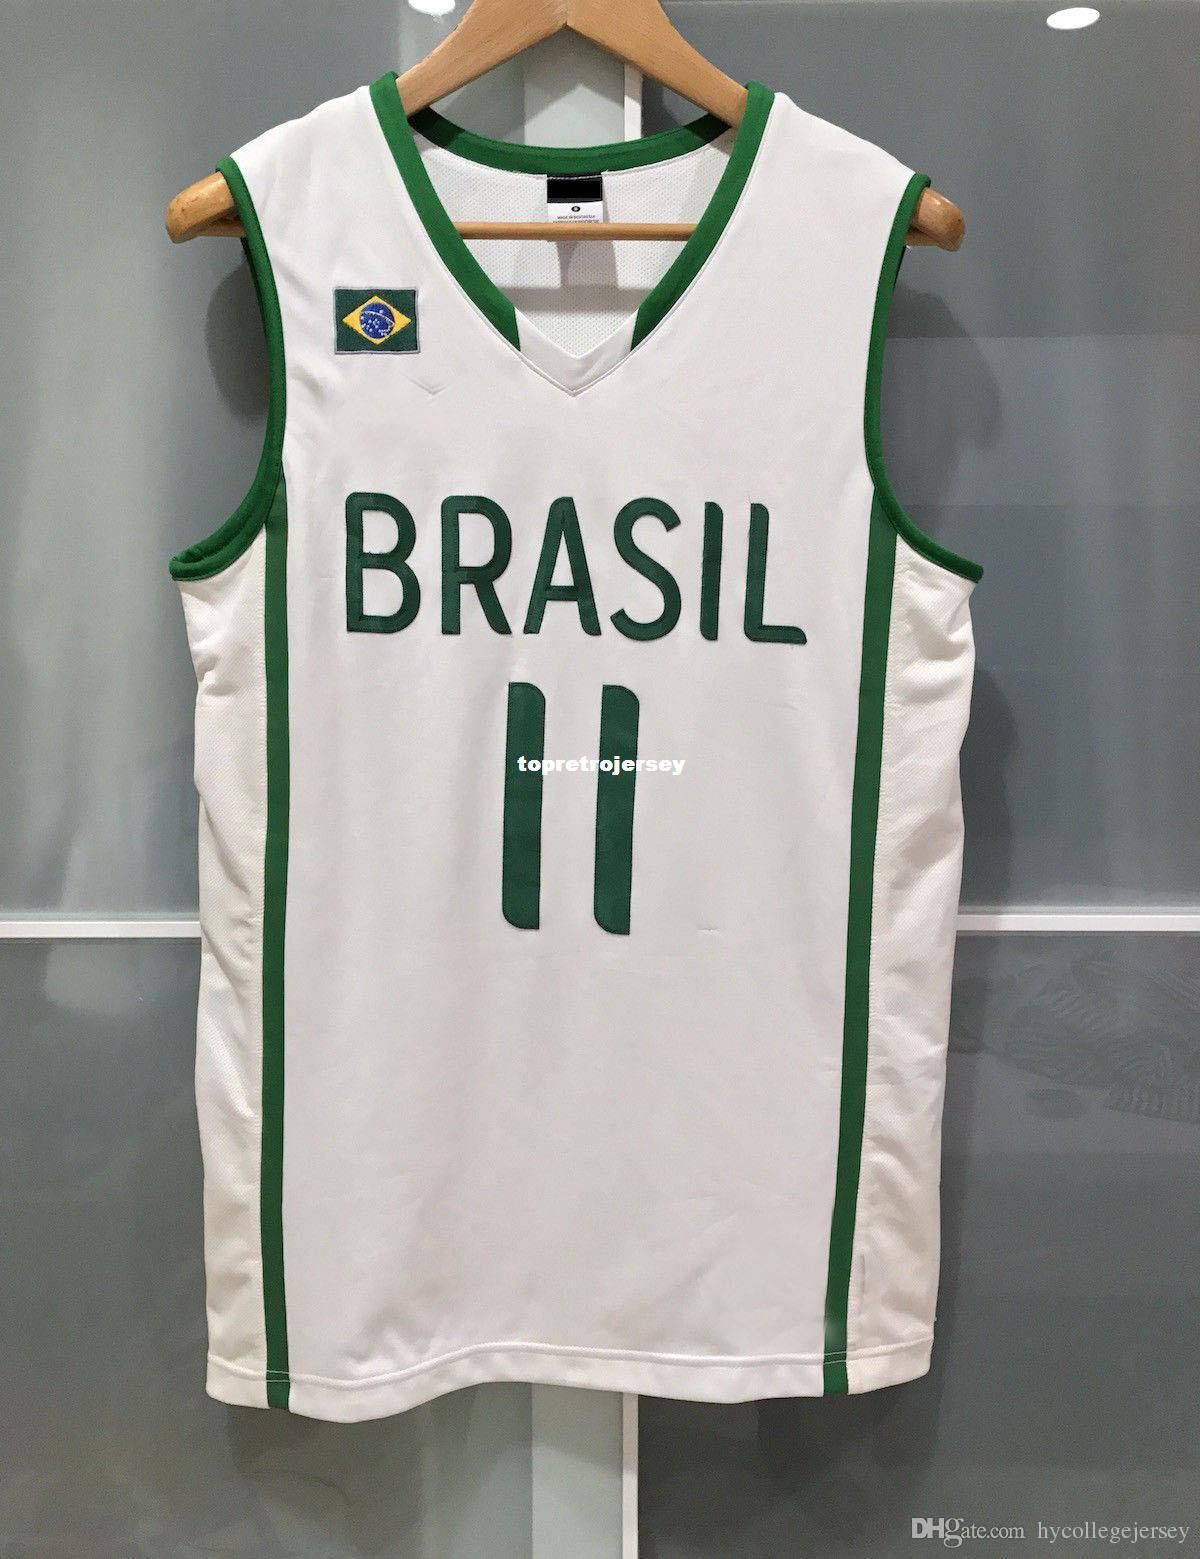 brazil basketball jersey design